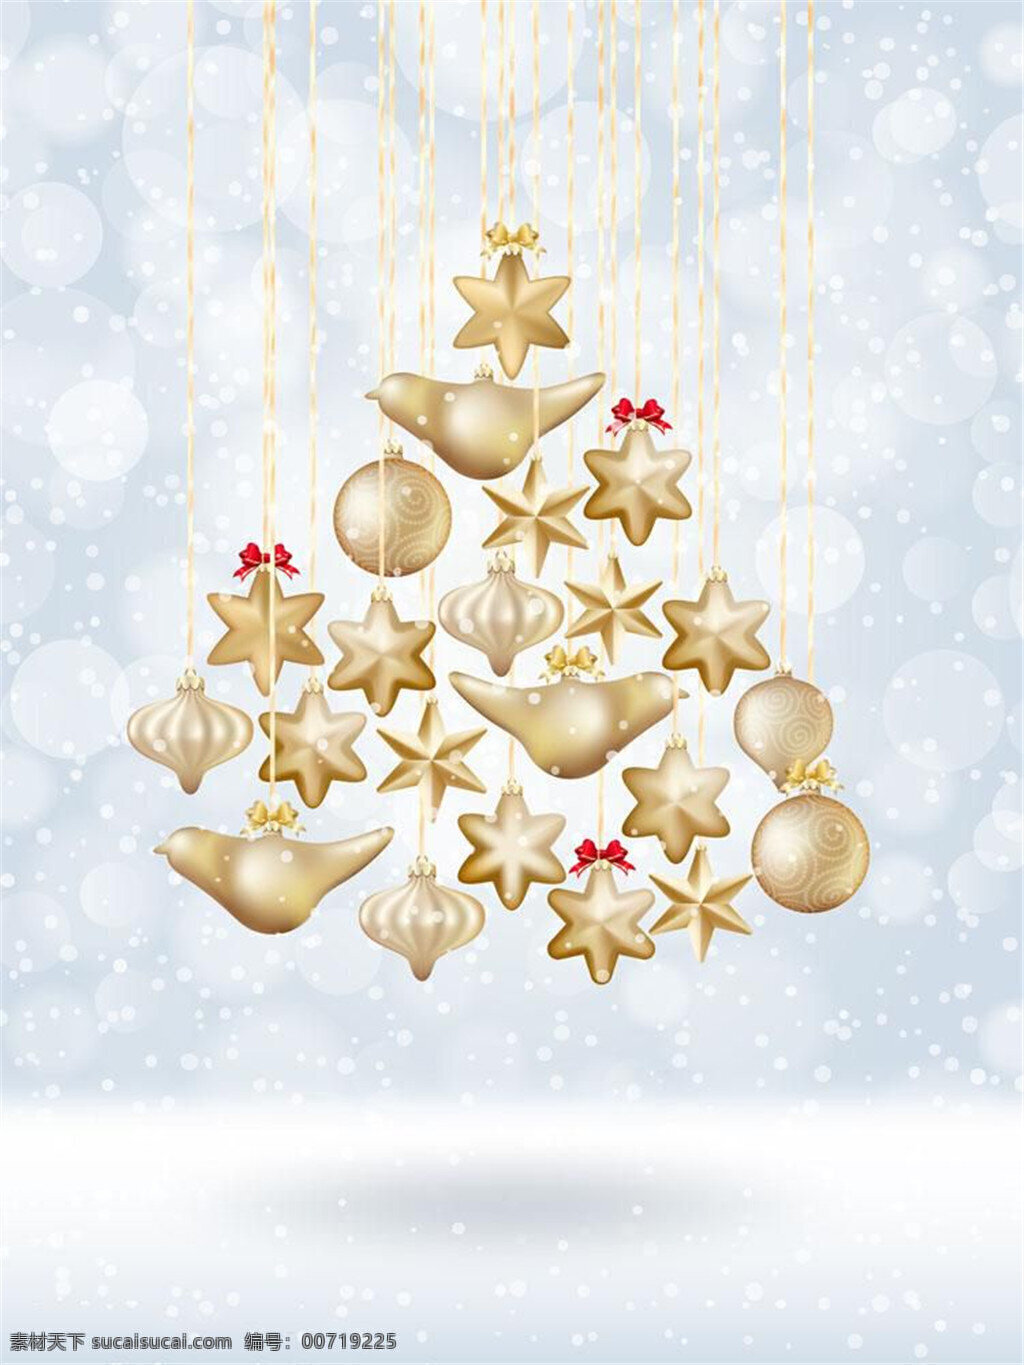 光斑 悬挂 圣诞 装饰物 圣诞装饰 金莹剔透 六角星 新颖